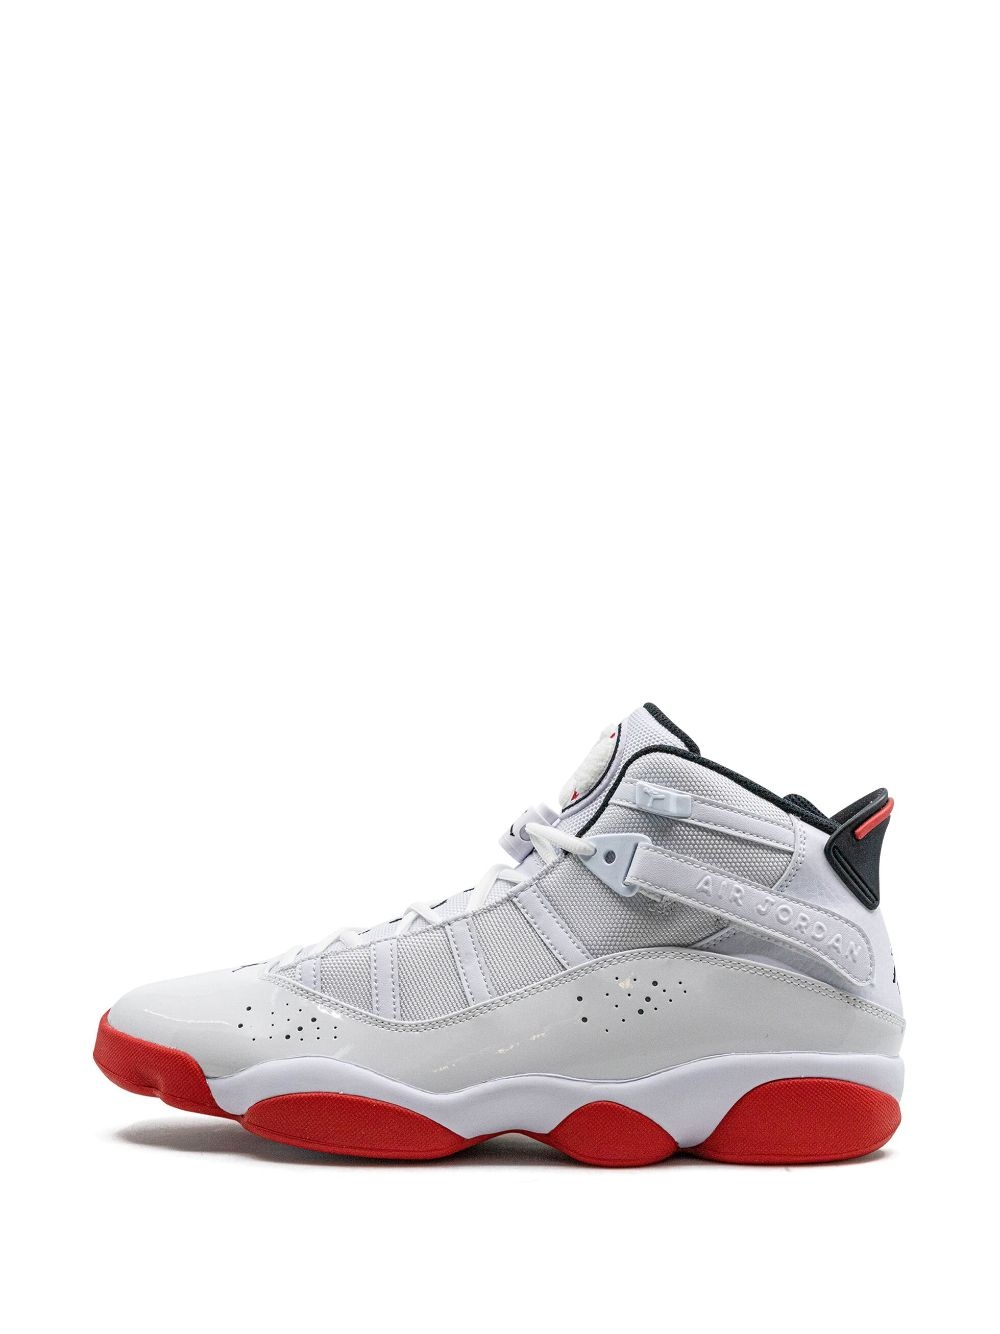 Jordan 6 Rings sneakers - 5